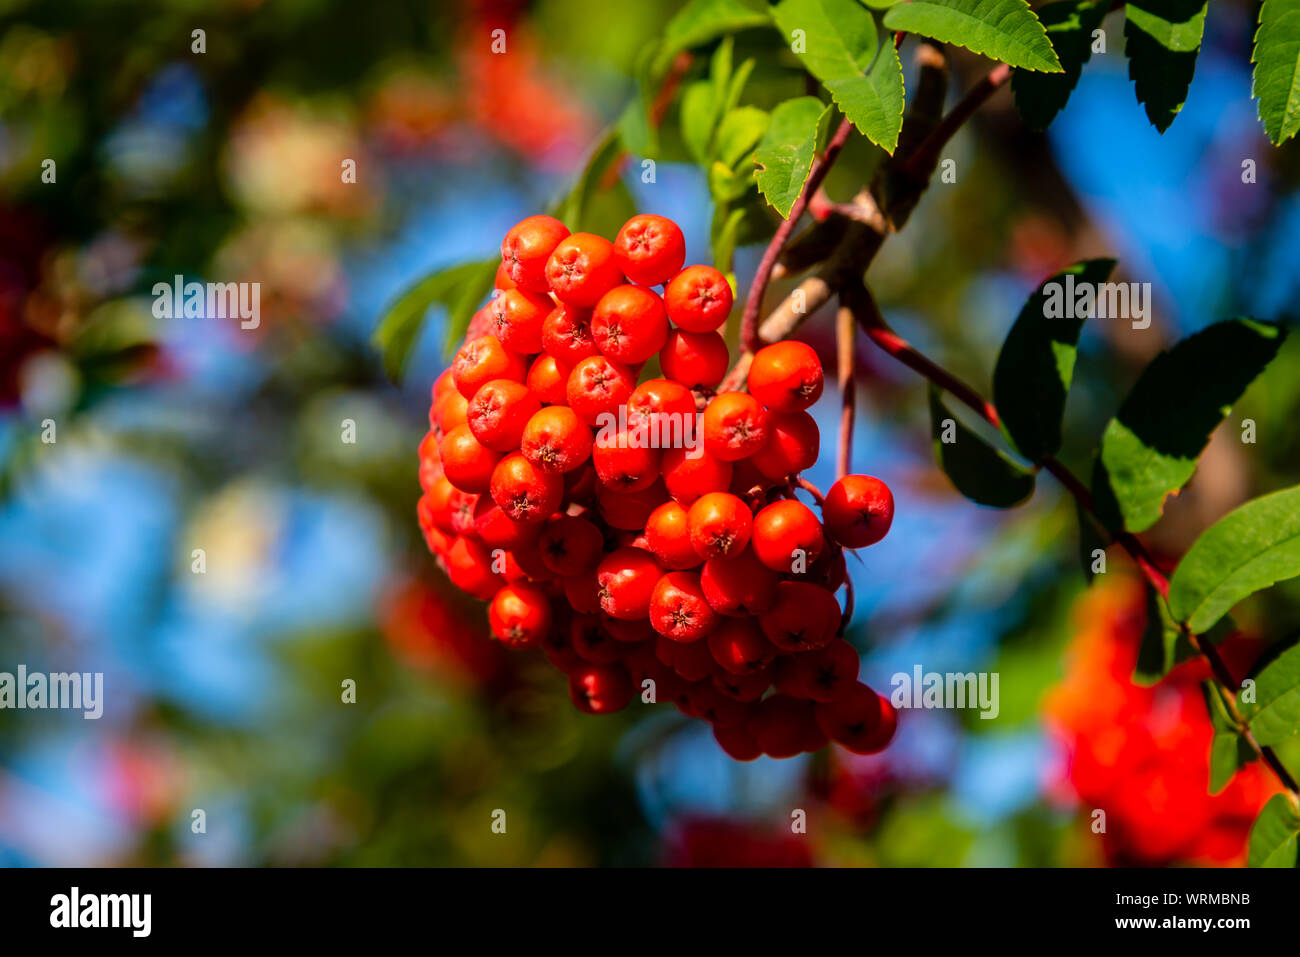 Rowan tree, Ash-berry tree at autumn Stock Photo